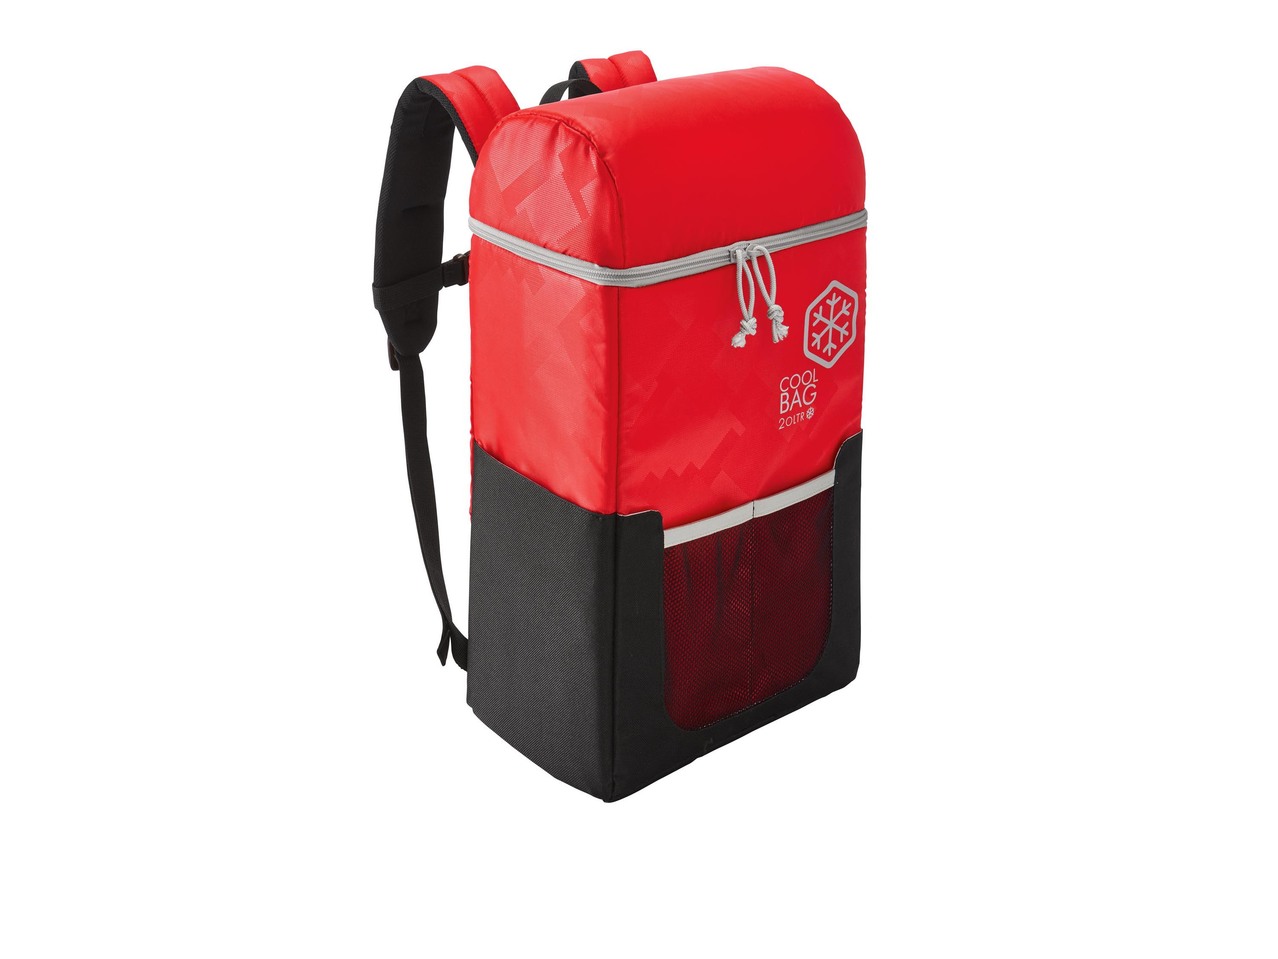 Cool Bag Backpack, 20L